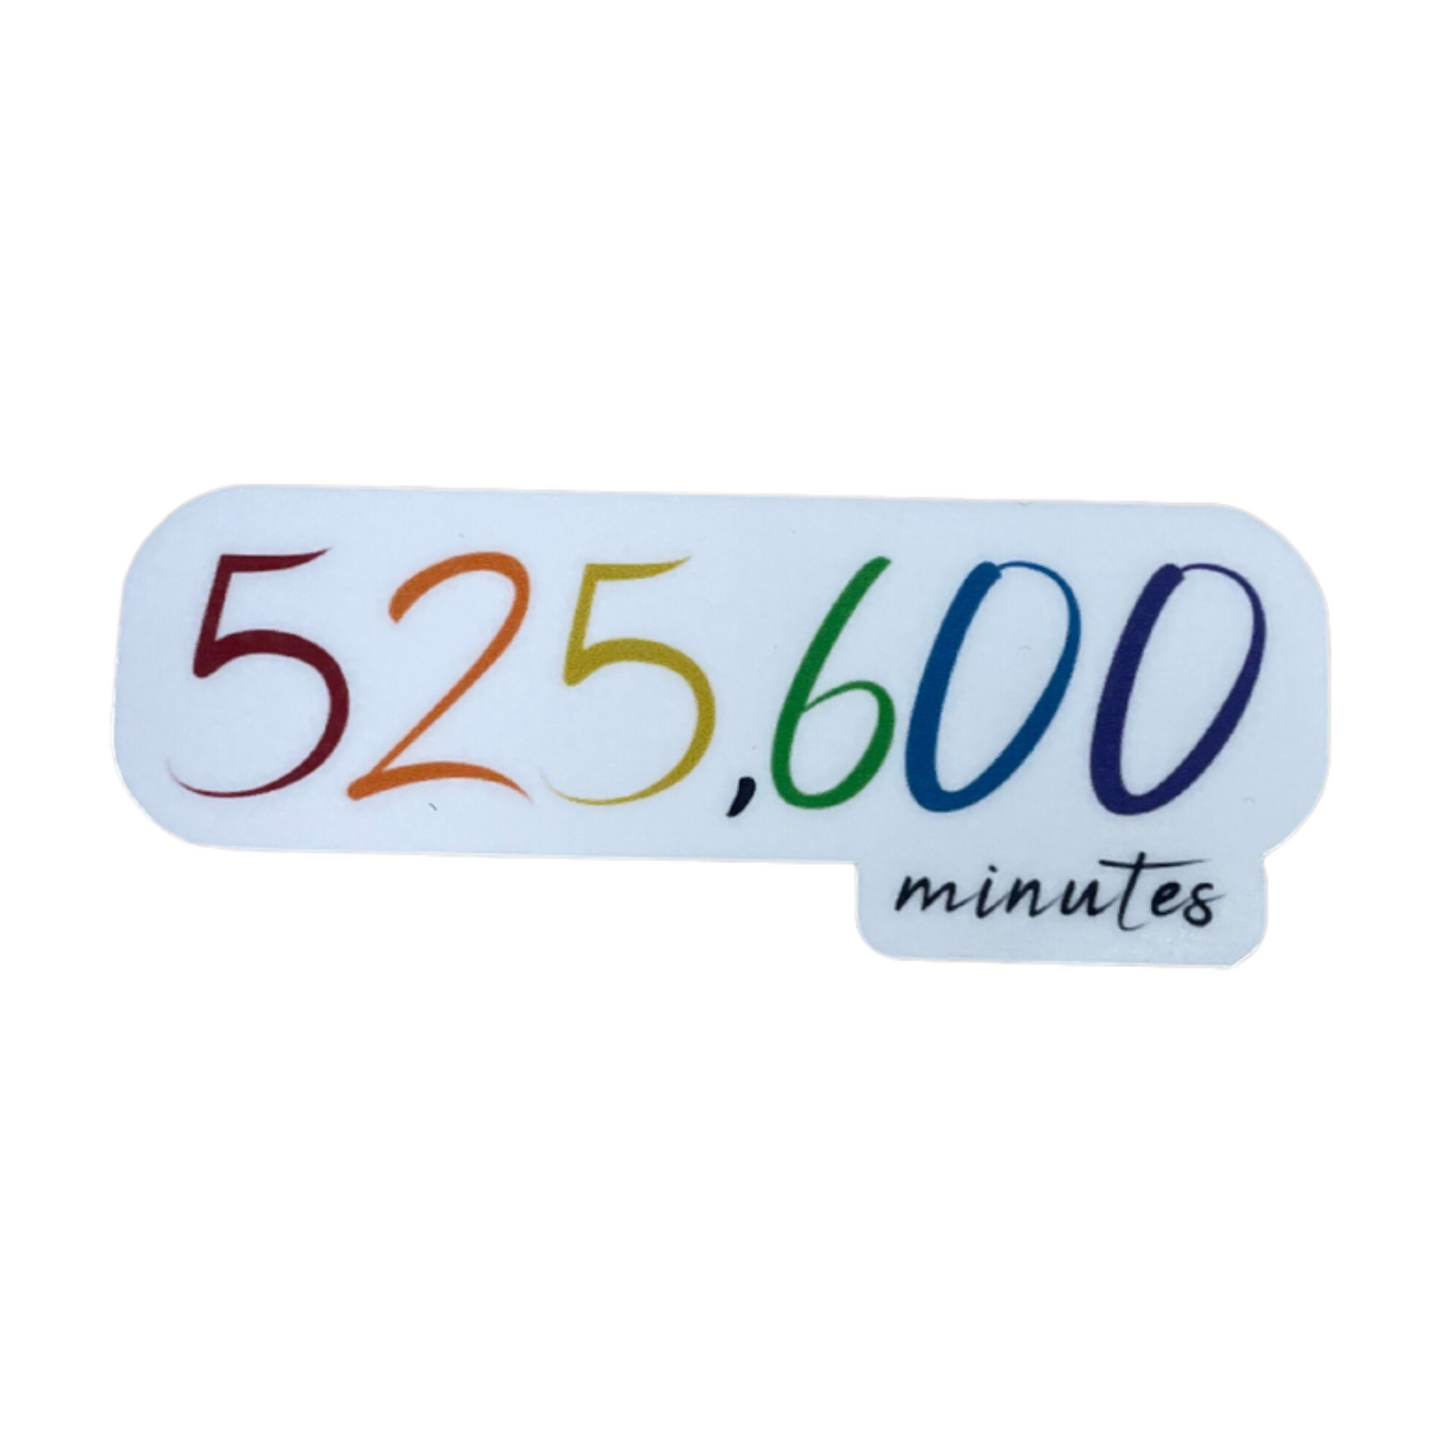 525,600 Minutes Vinyl Sticker